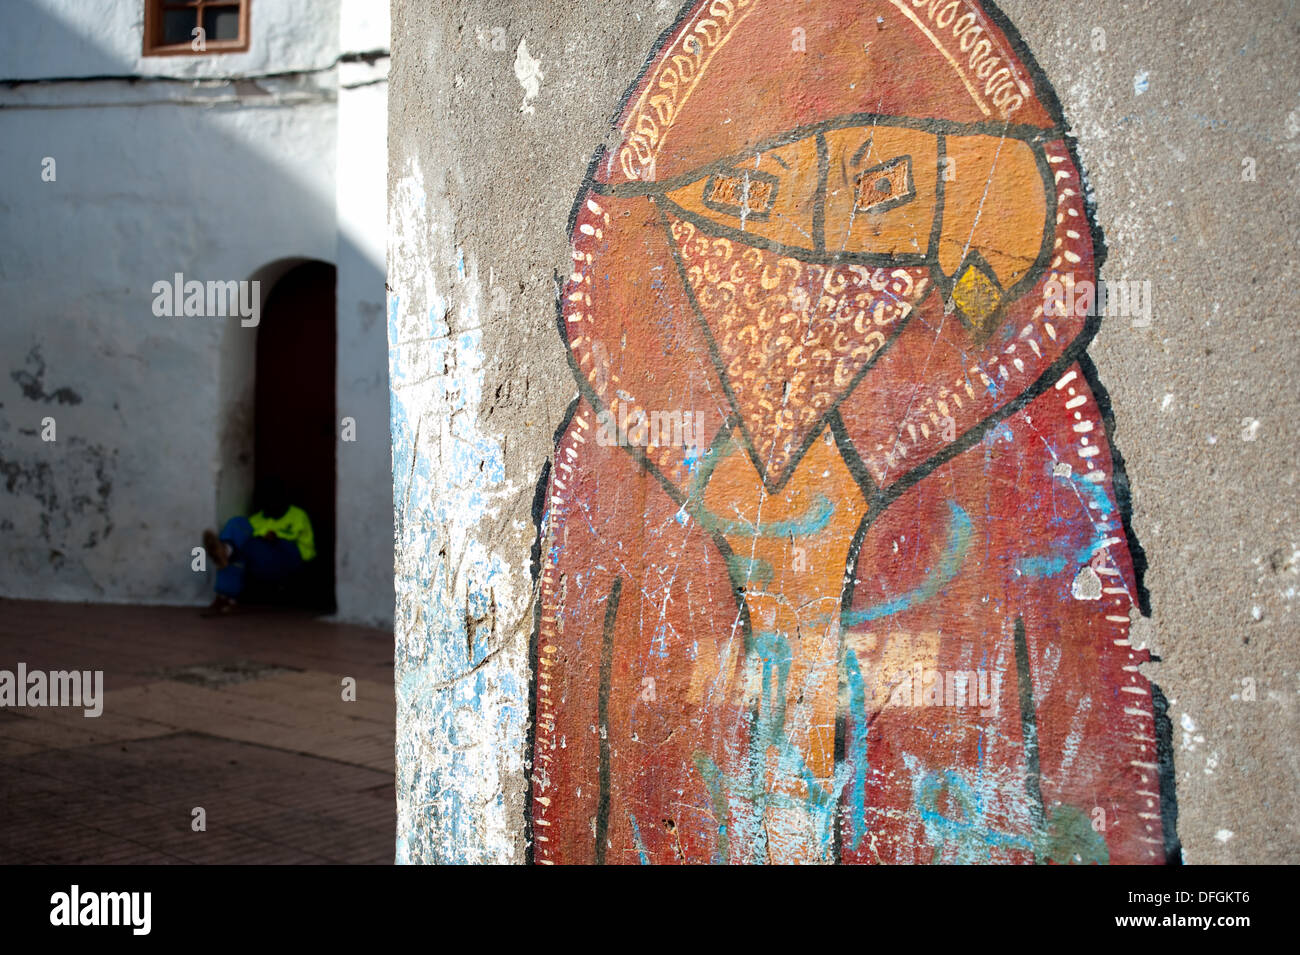 Le Graffiti représentant un mauvais garçon. Dans l'arrière-plan, un employé municipal chargé de nettoyer les rues se repose ( Maroc) Banque D'Images